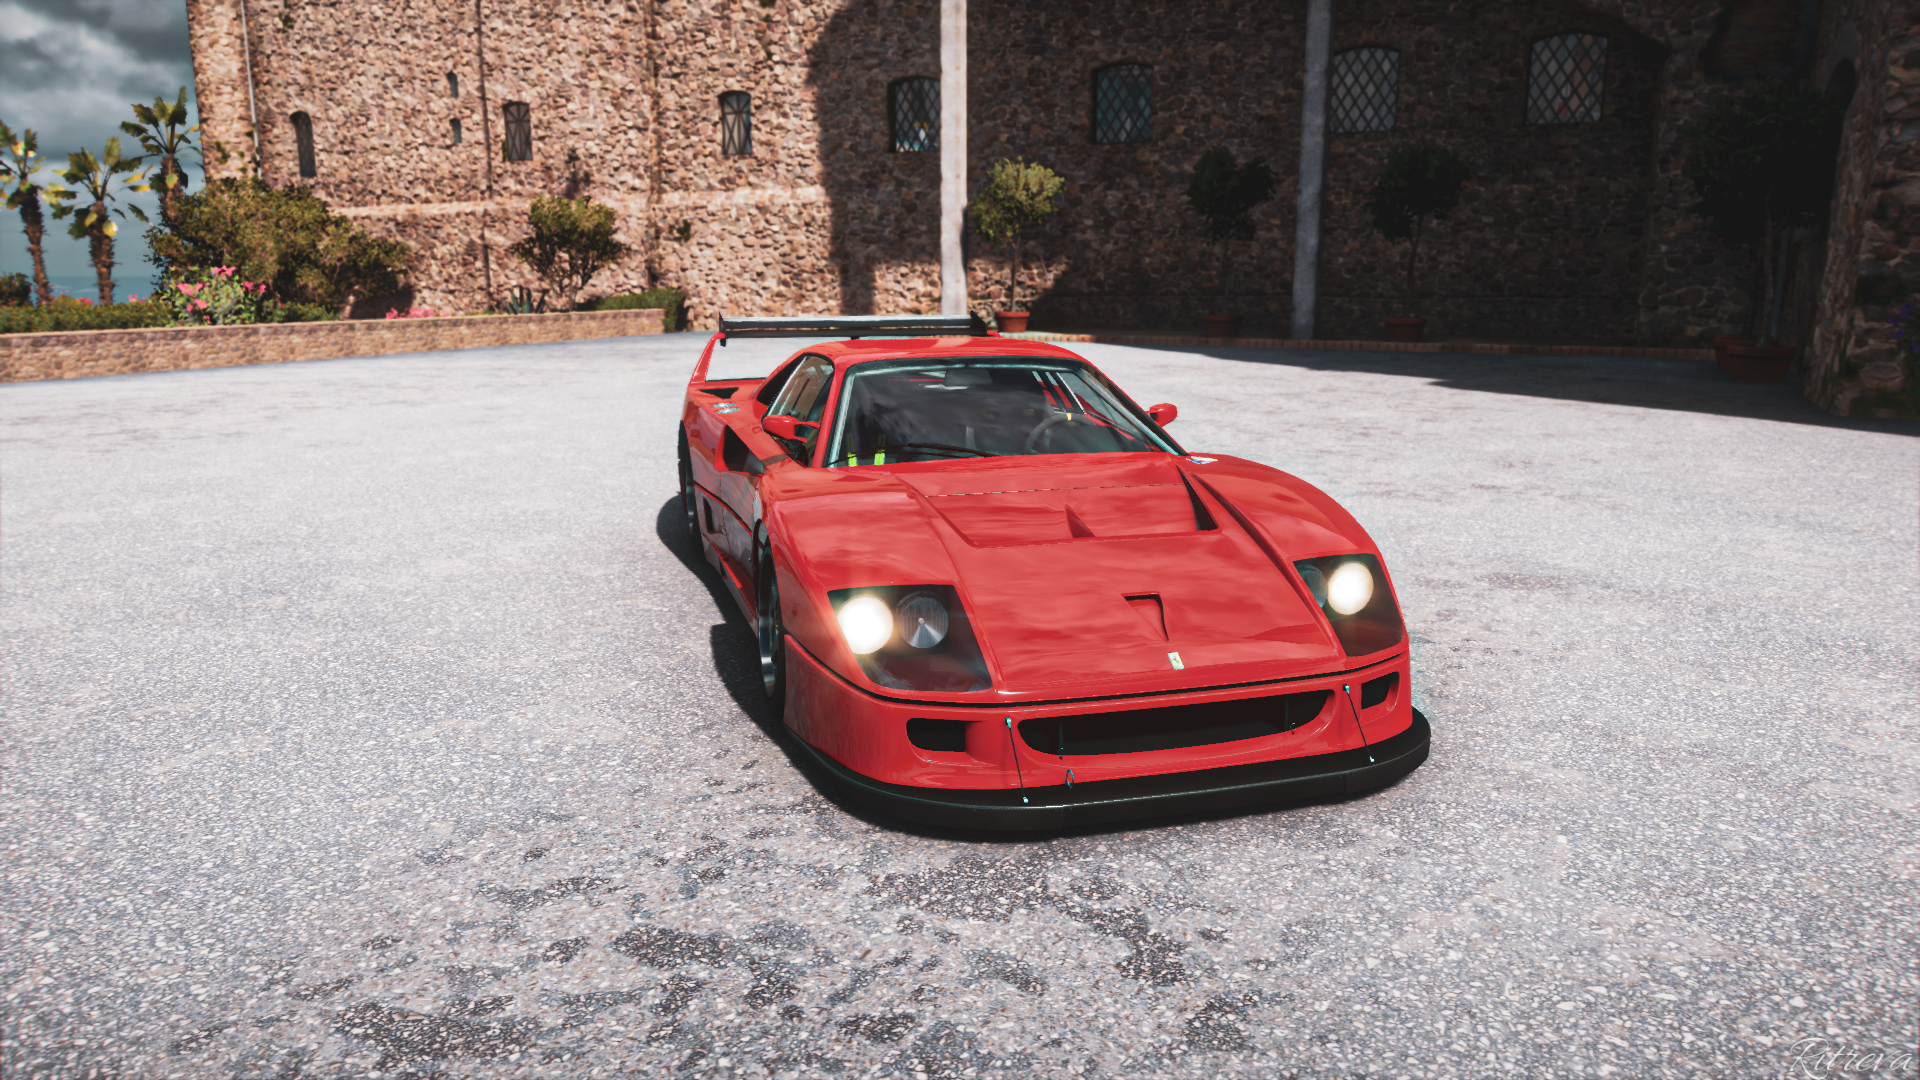 General 1920x1080 Forza Horizon 5 Ferrari F40 Competizione video game art car video games Ferrari